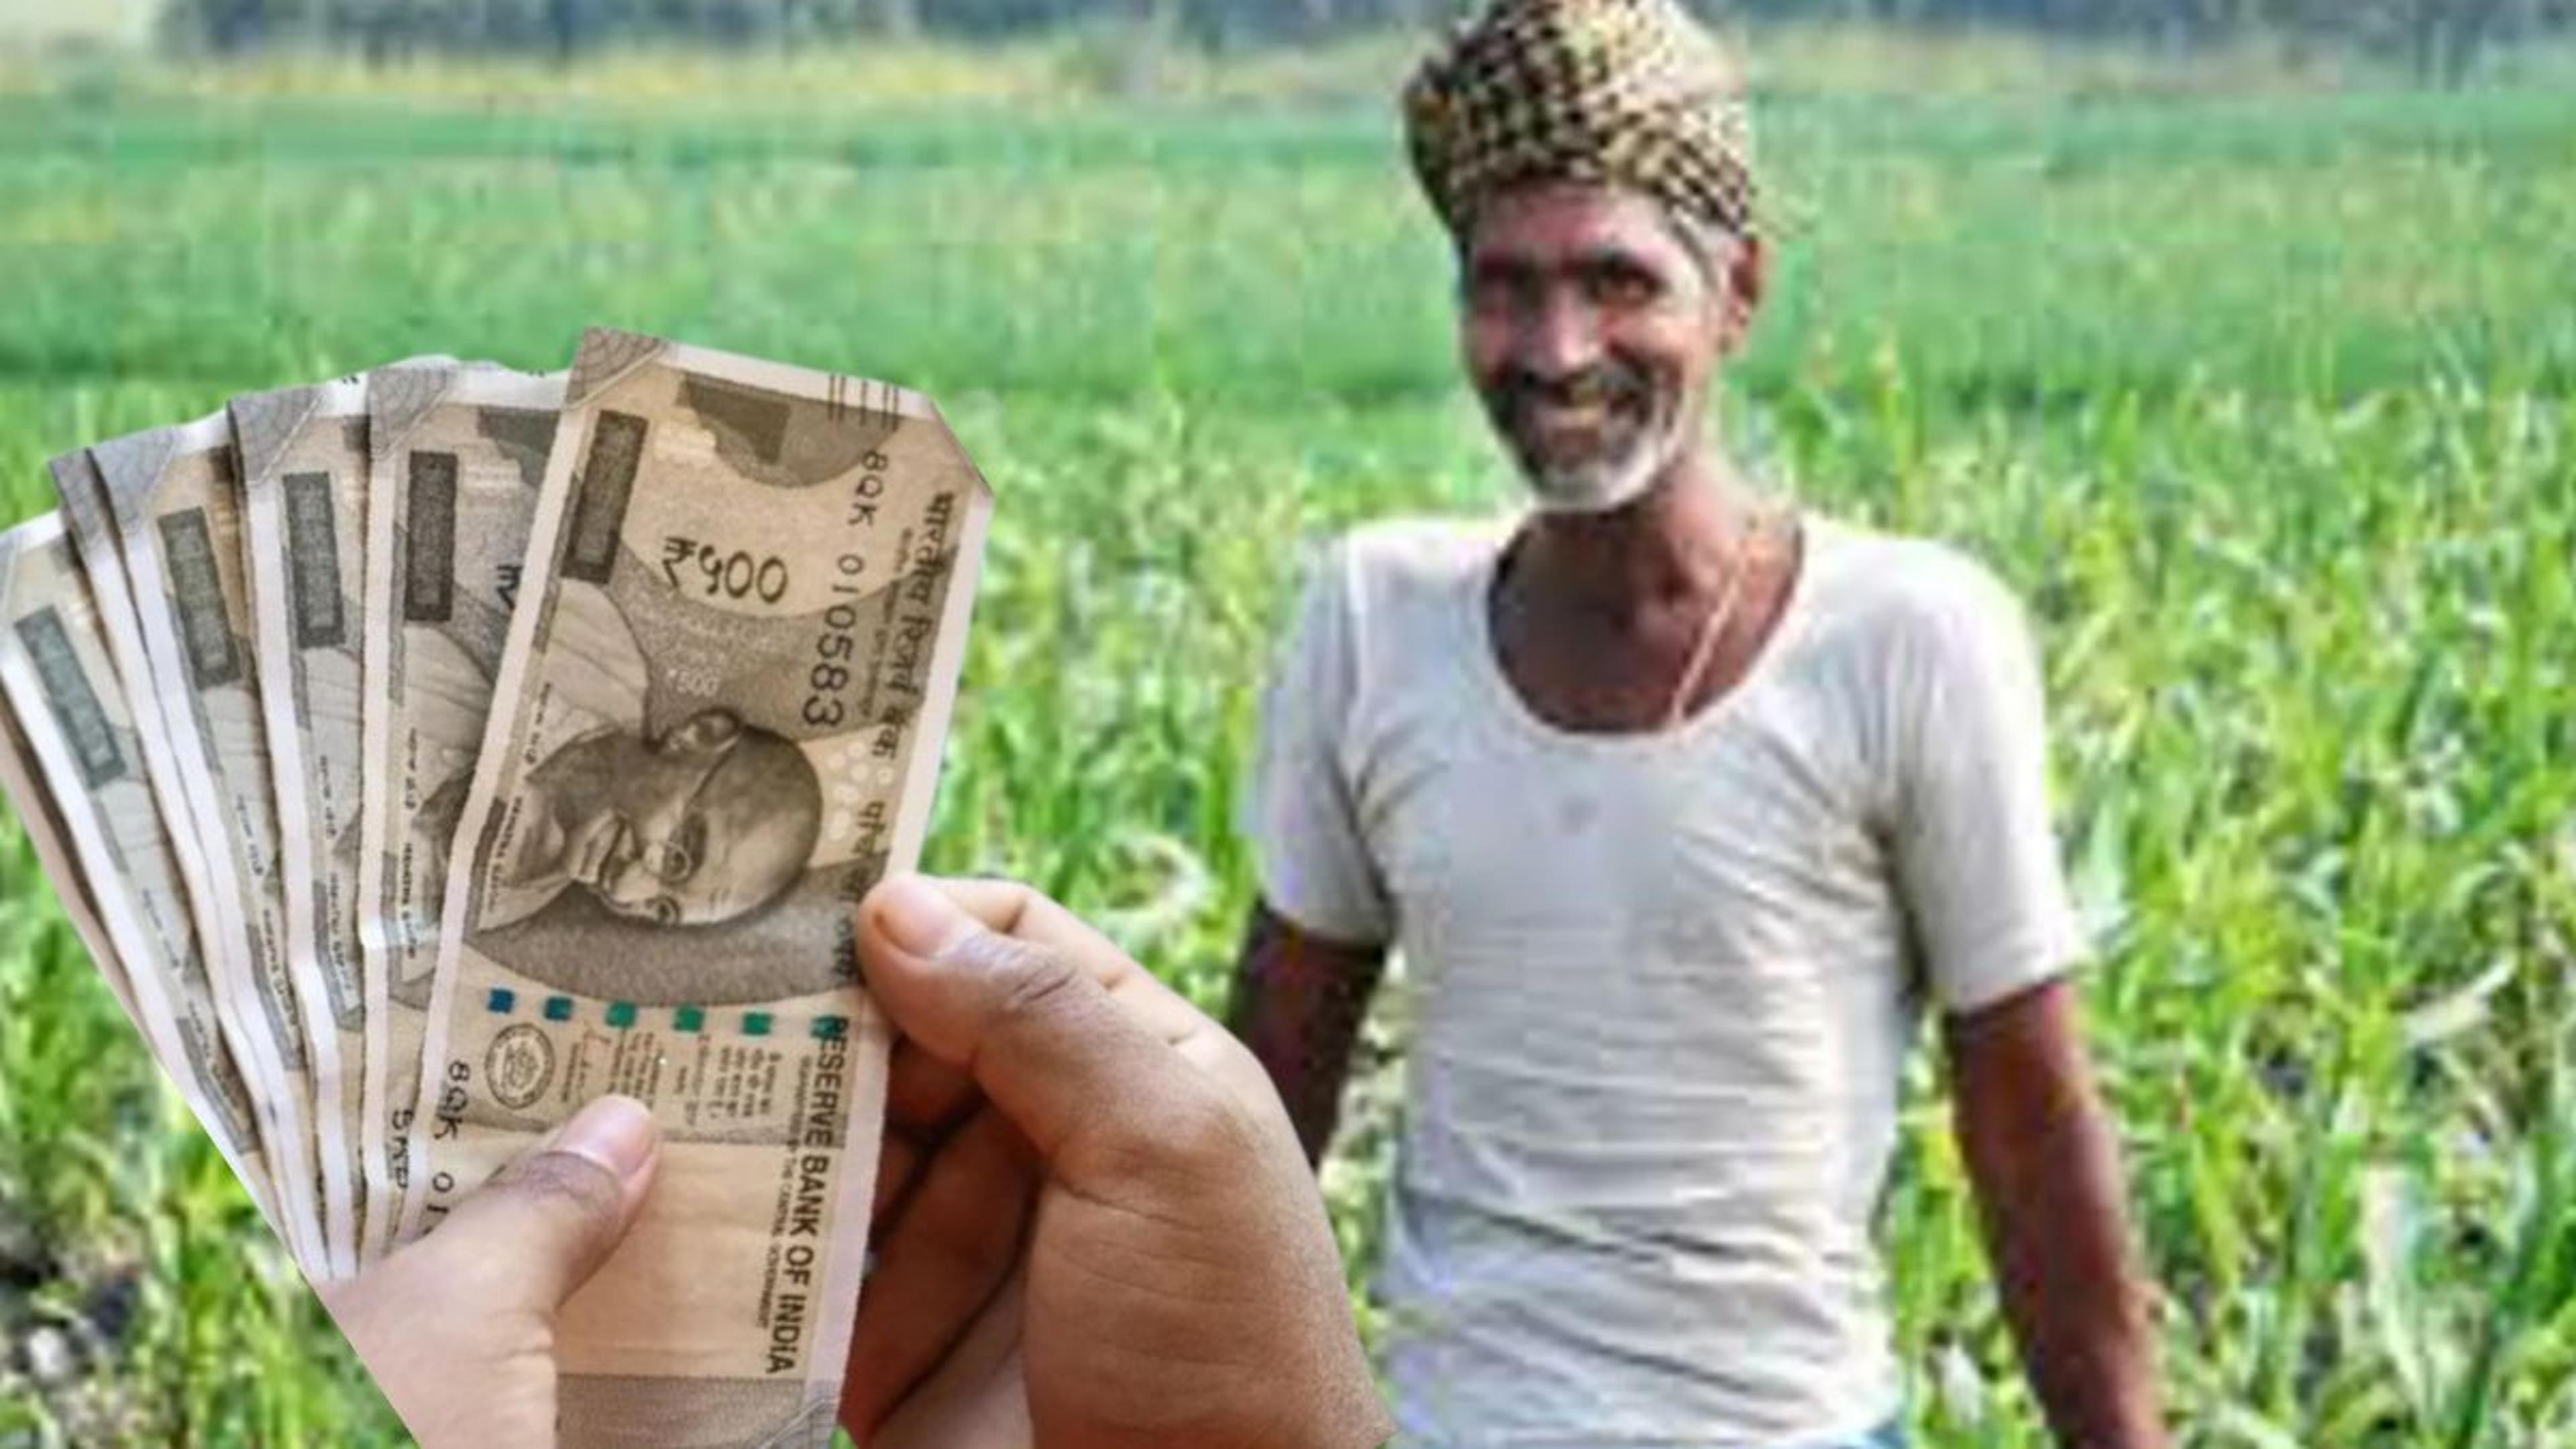 किसानों के लिए राहत भरी खबर…इस तारीख तक बिना ब्याज कर सकेंगे ऋण का भुगतान, पढ़ें
पूरी जानकारी